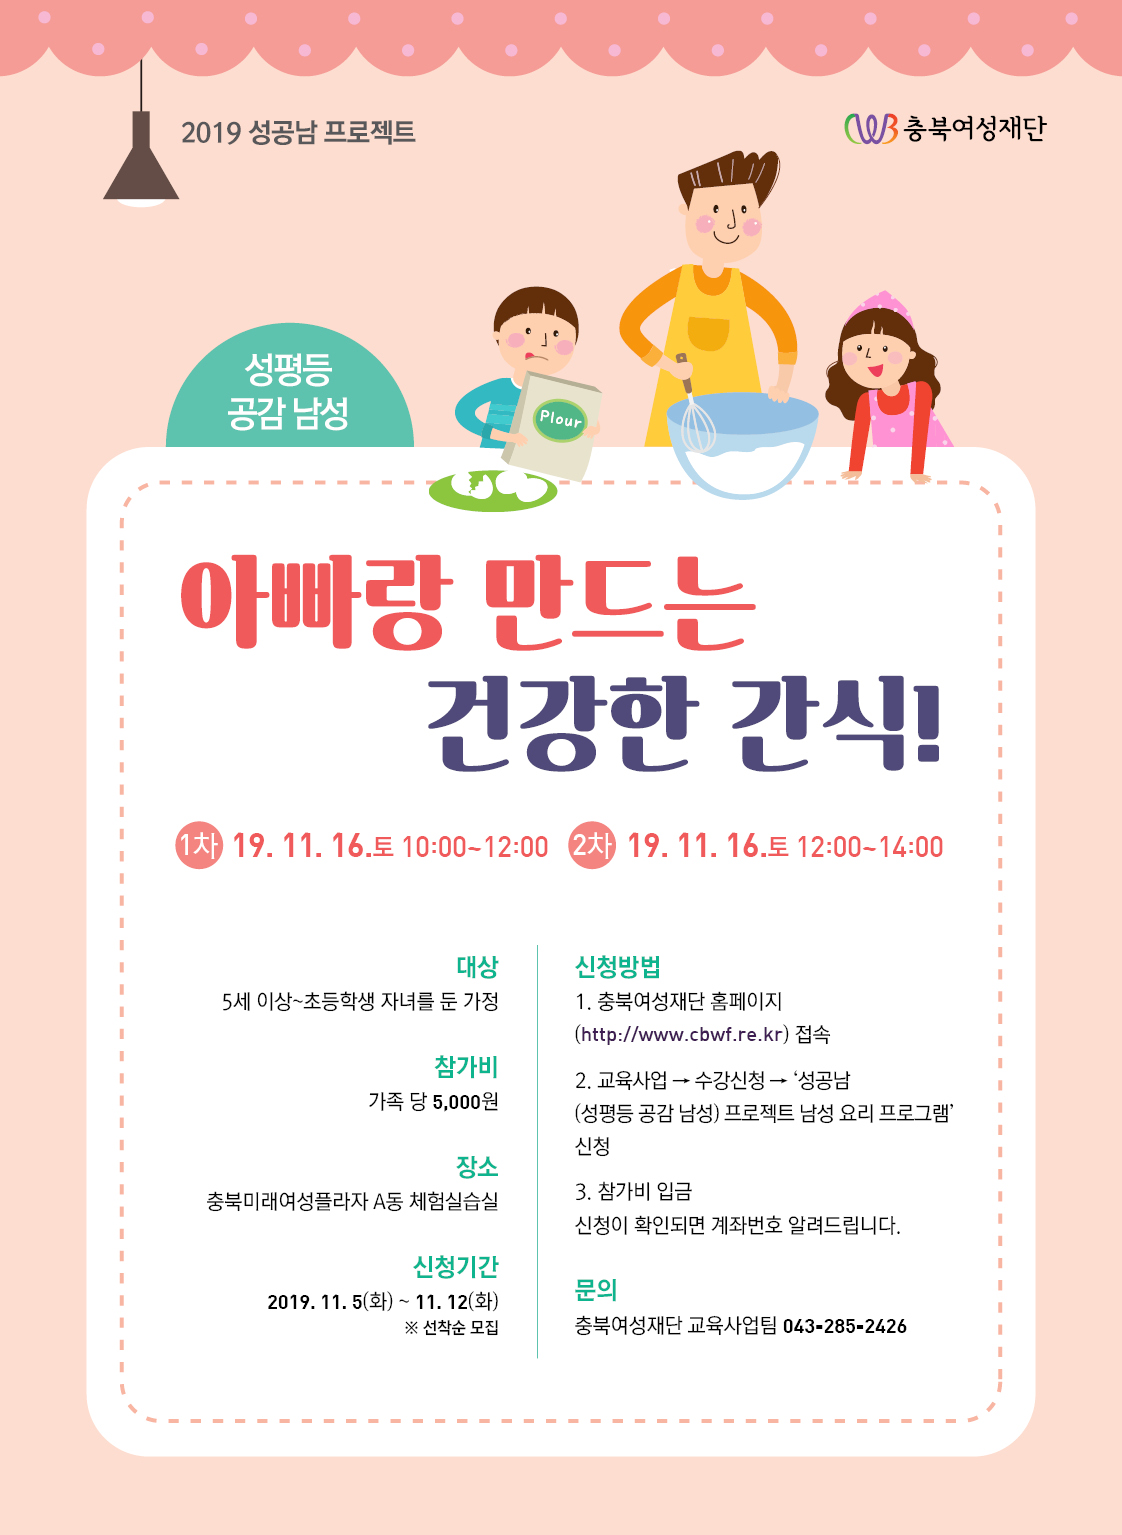 2019 성공남 프로젝트_남성 요리 프로그램